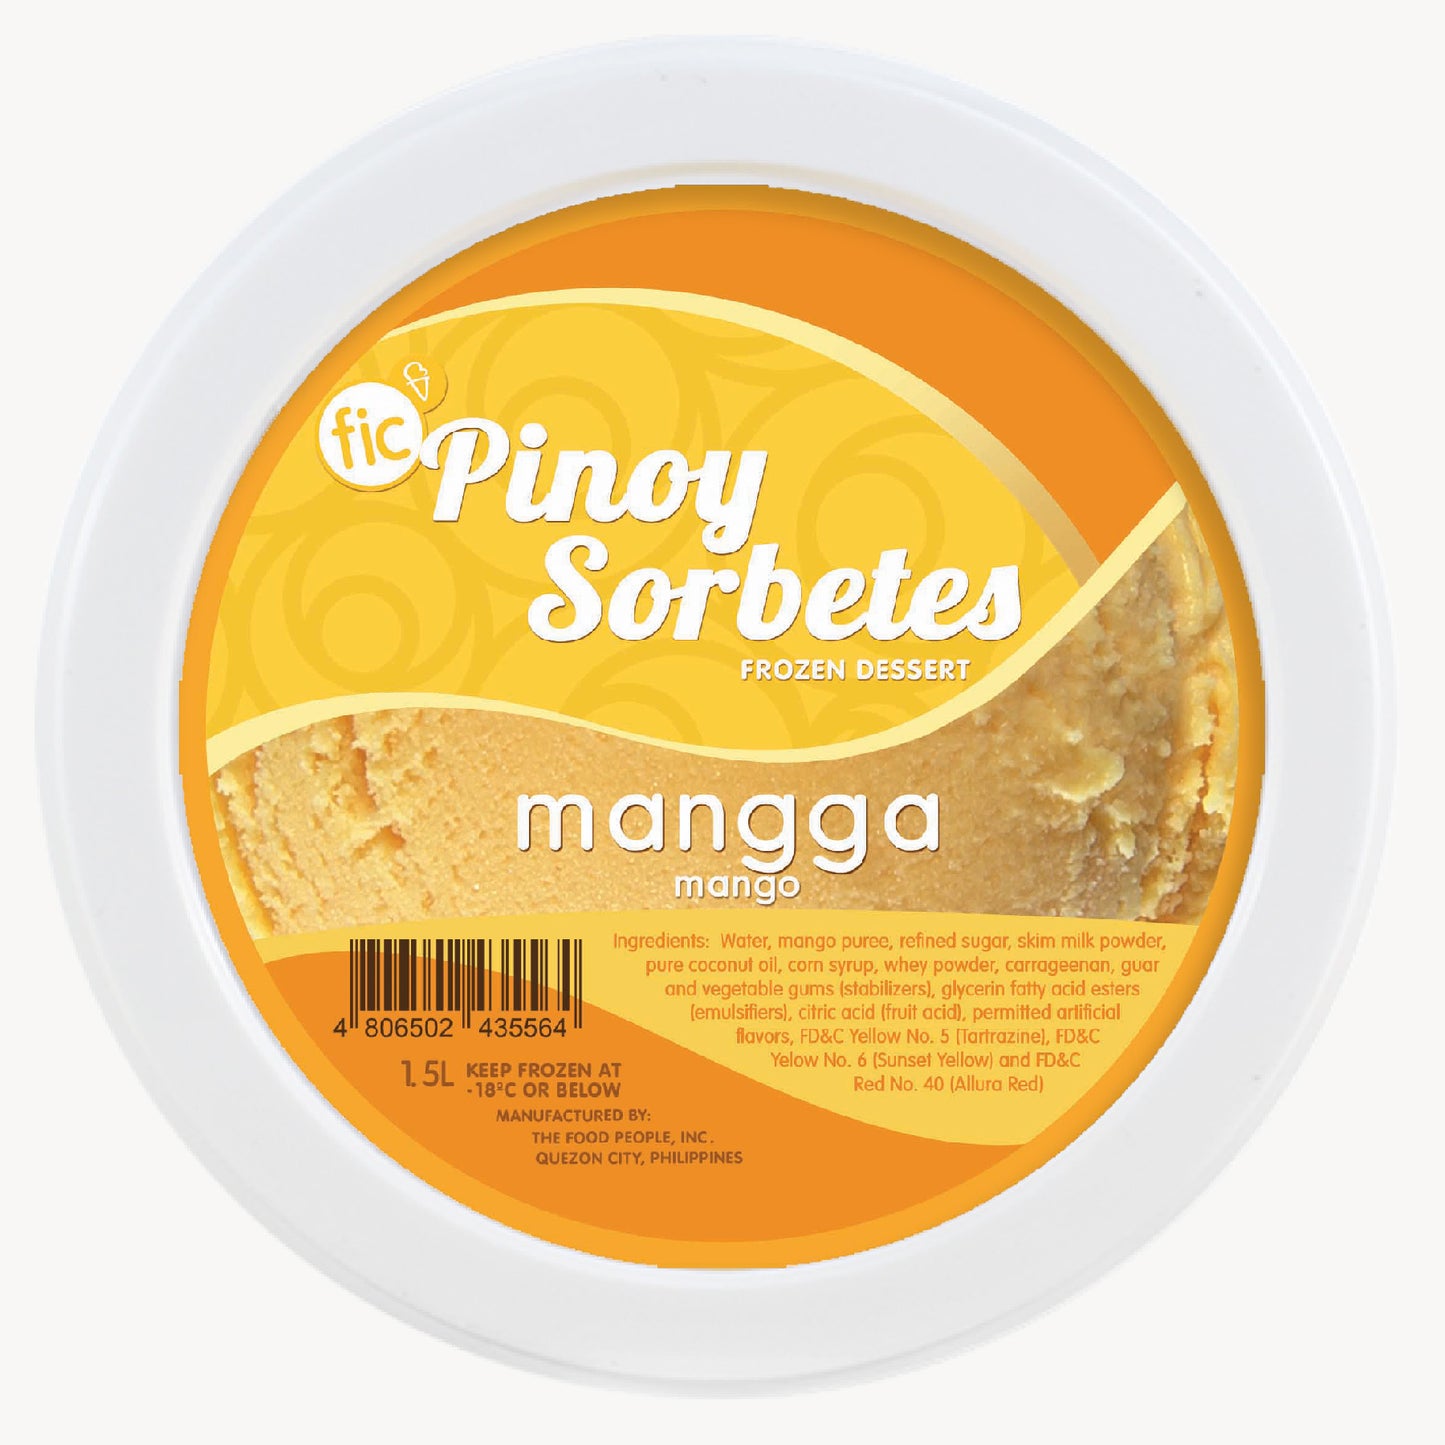 FIC Pinoy Sorbetes Frozen Dessert Mangga (Mango) 1.5L